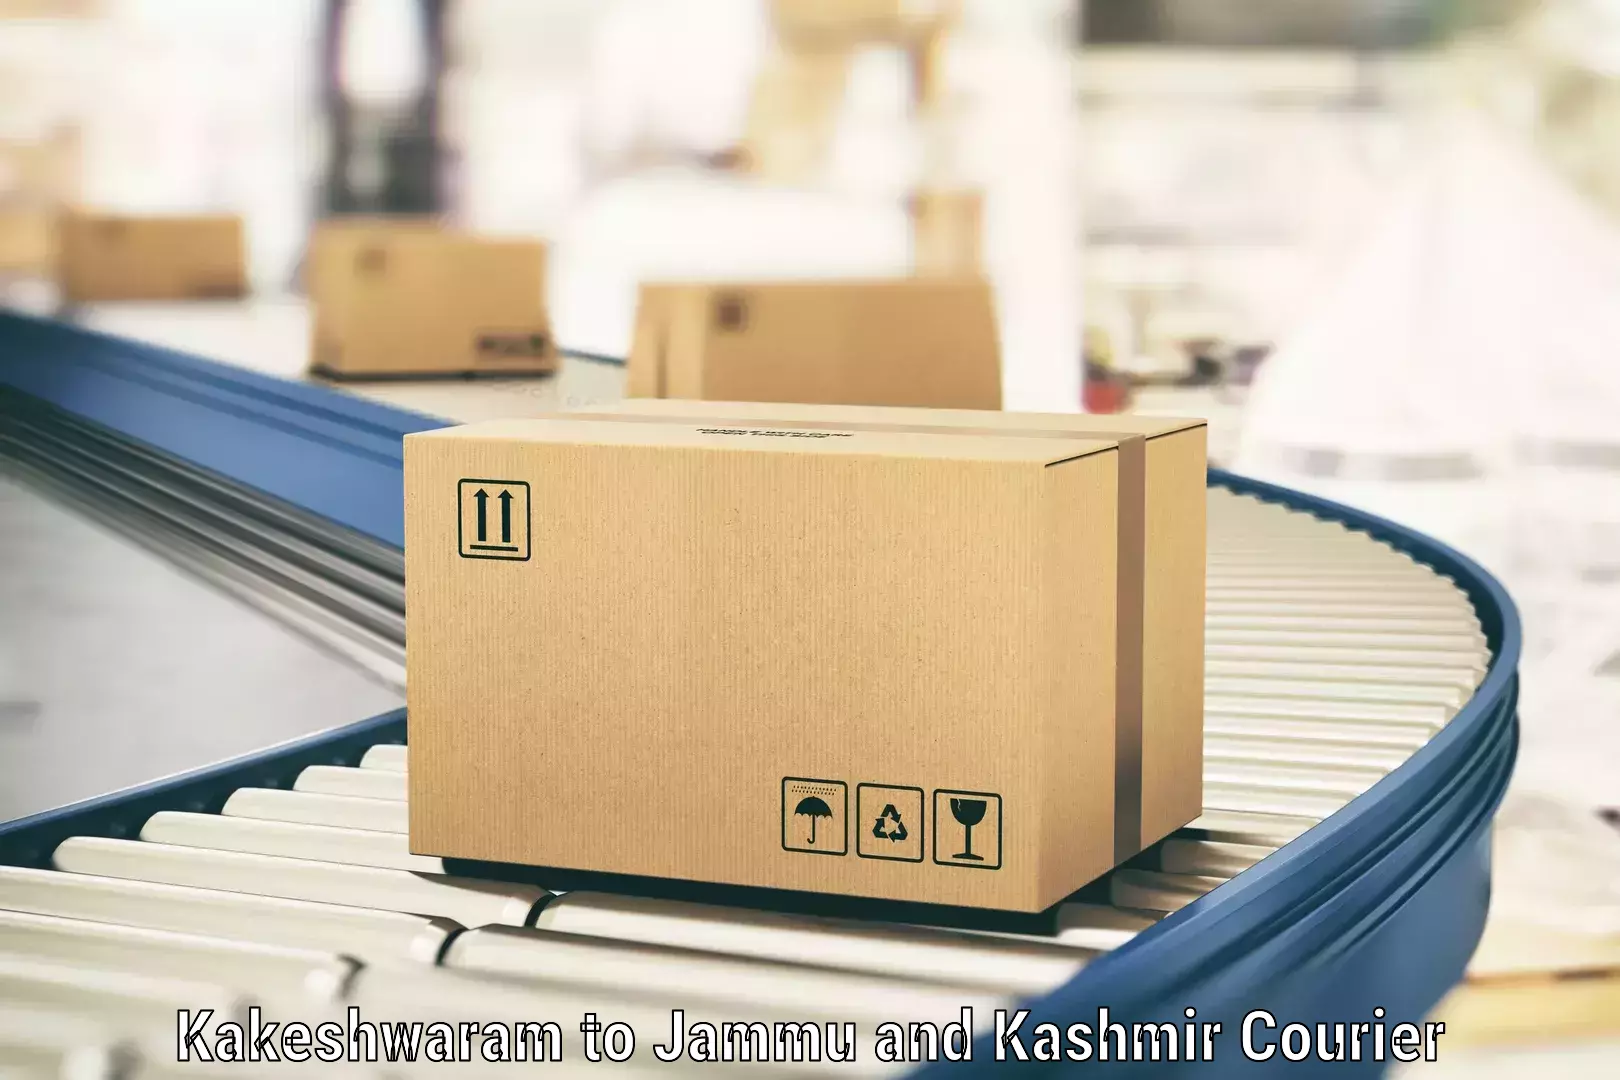 Package tracking Kakeshwaram to Jammu and Kashmir